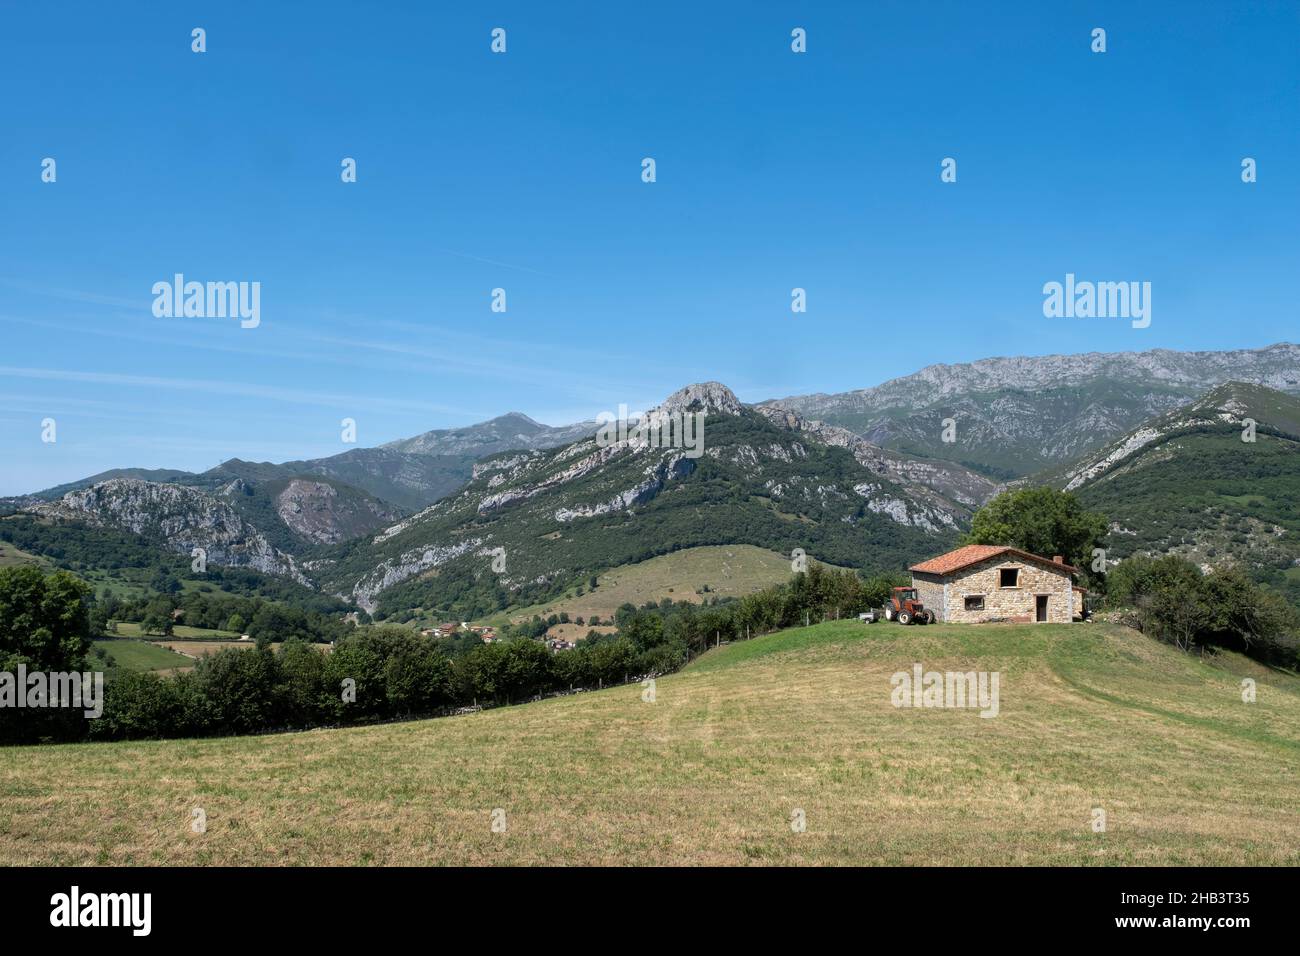 Campi in una zona montagnosa, con una casa colonica e un trattore con un rimorchio alla porta, Arenas de Cabrales, Asturias, Spagna, orizzontale Foto Stock